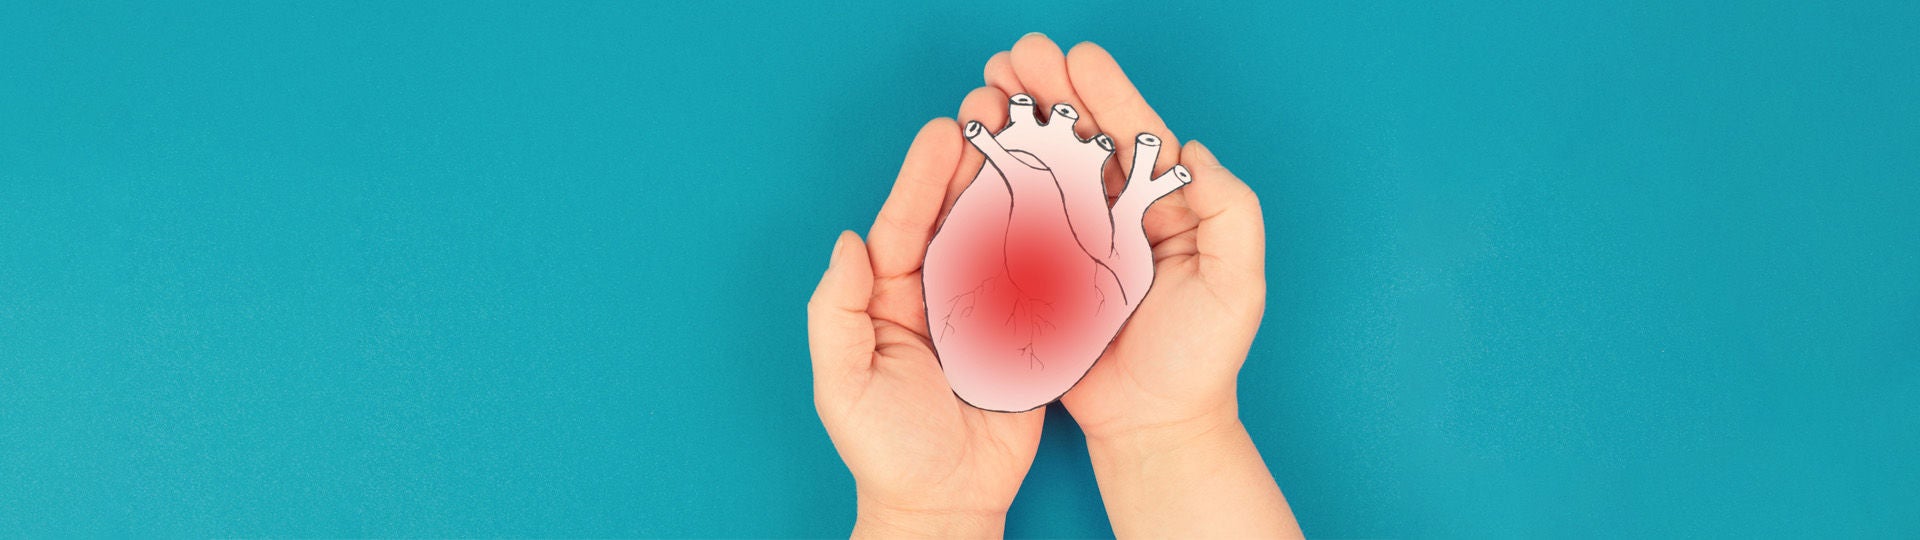 Kinderhände halten ein Papiermodell eines entzündeten Herzmuskels.